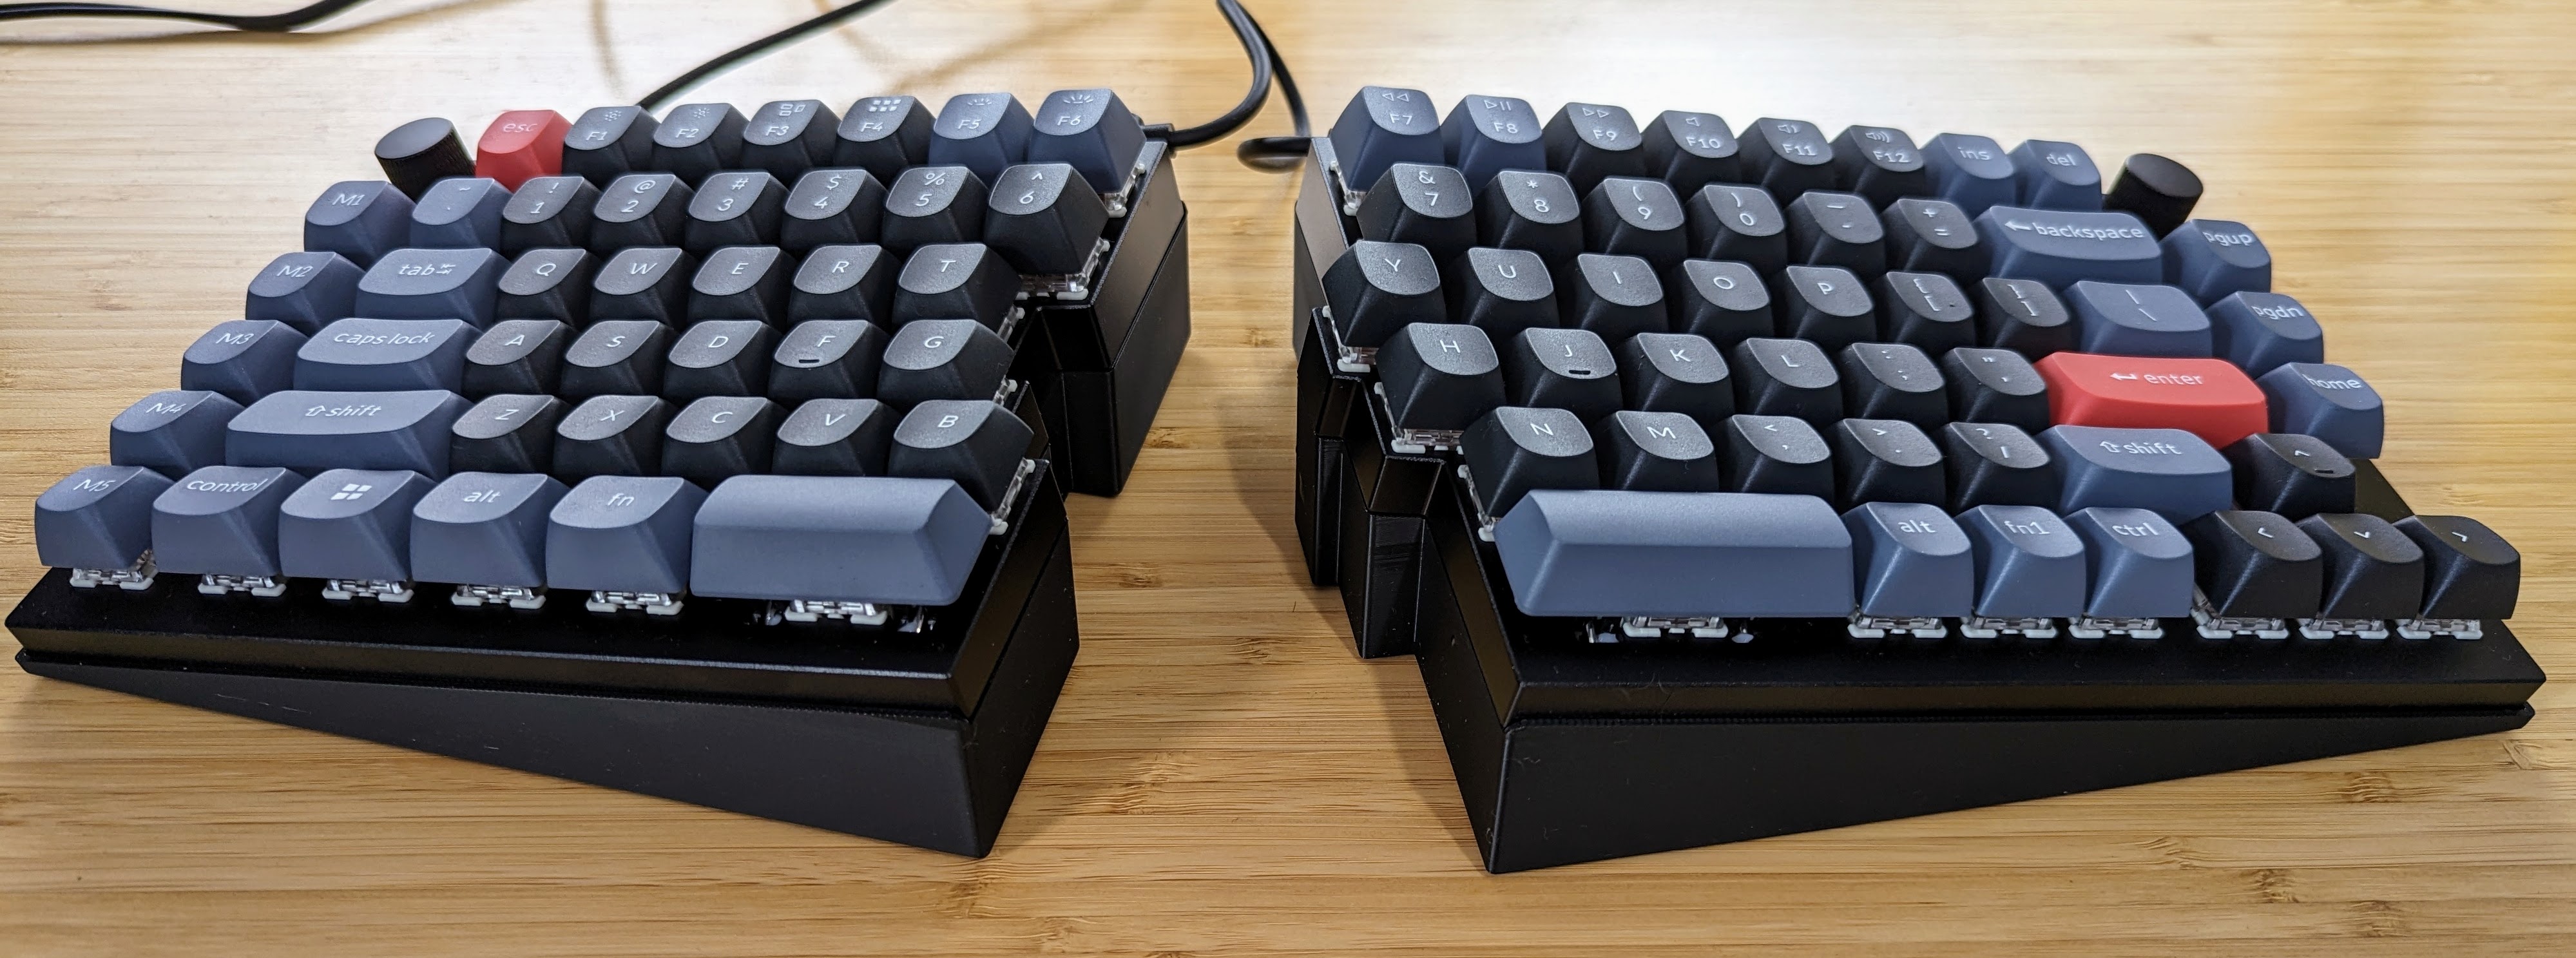 説明書類美品 Keychron Q11 US配列 茶軸 分割メカニカルキーボード ...